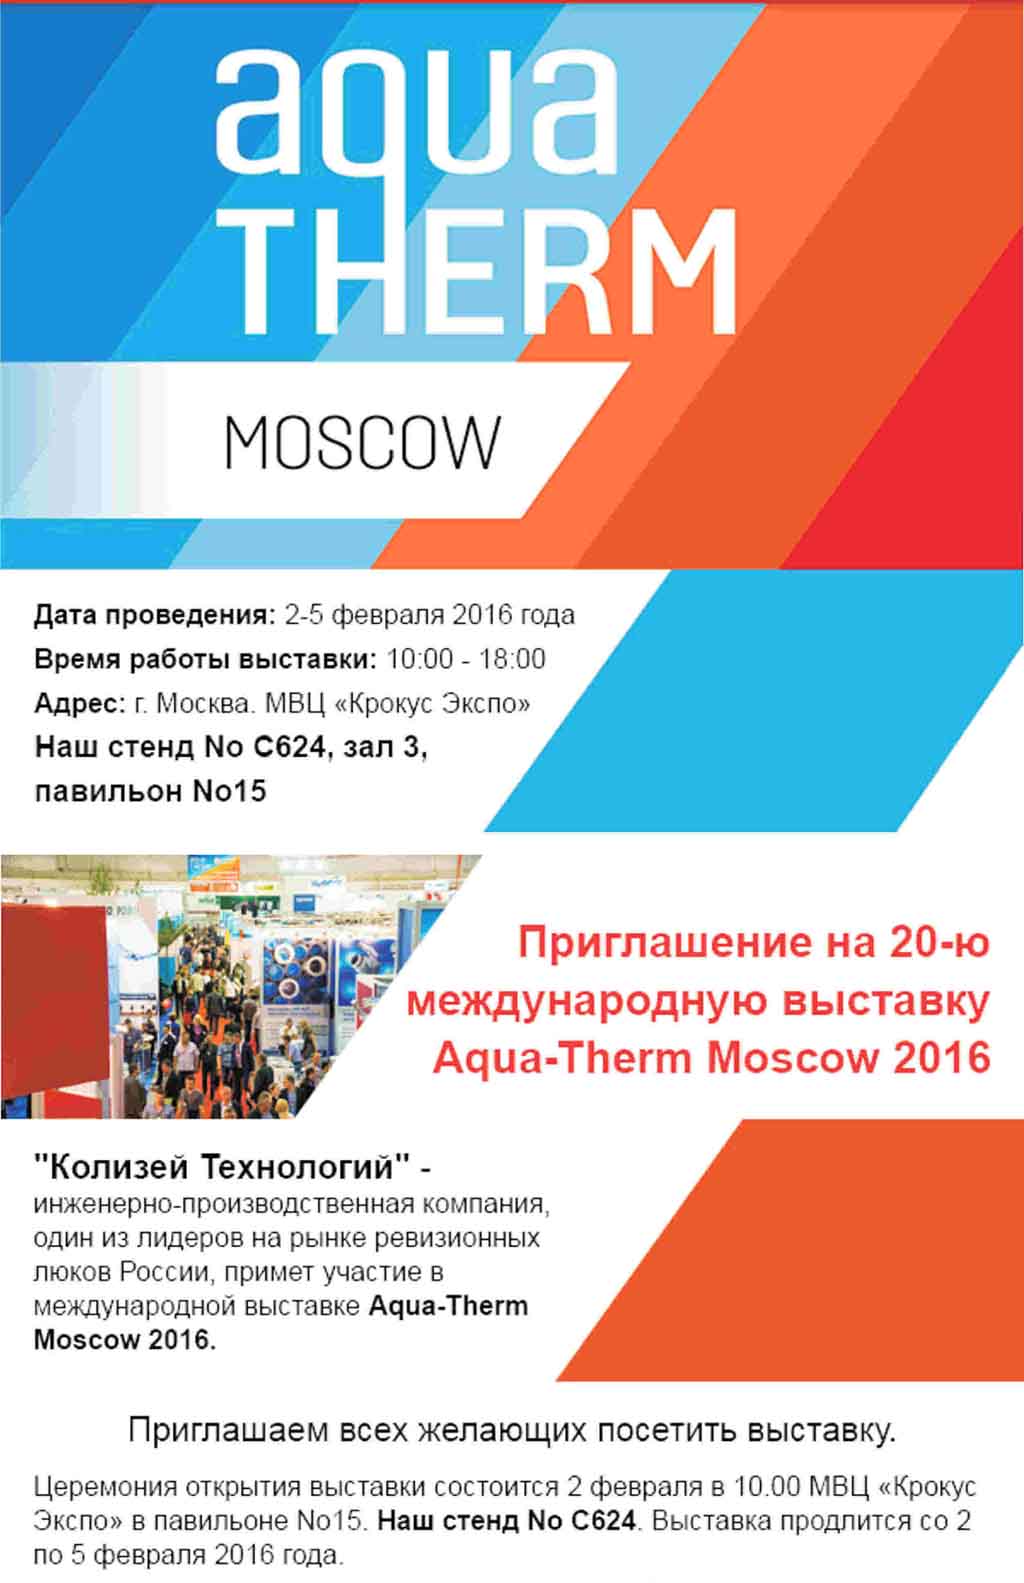 Приглашение на выставку Aqua - Therm Moscow 2016